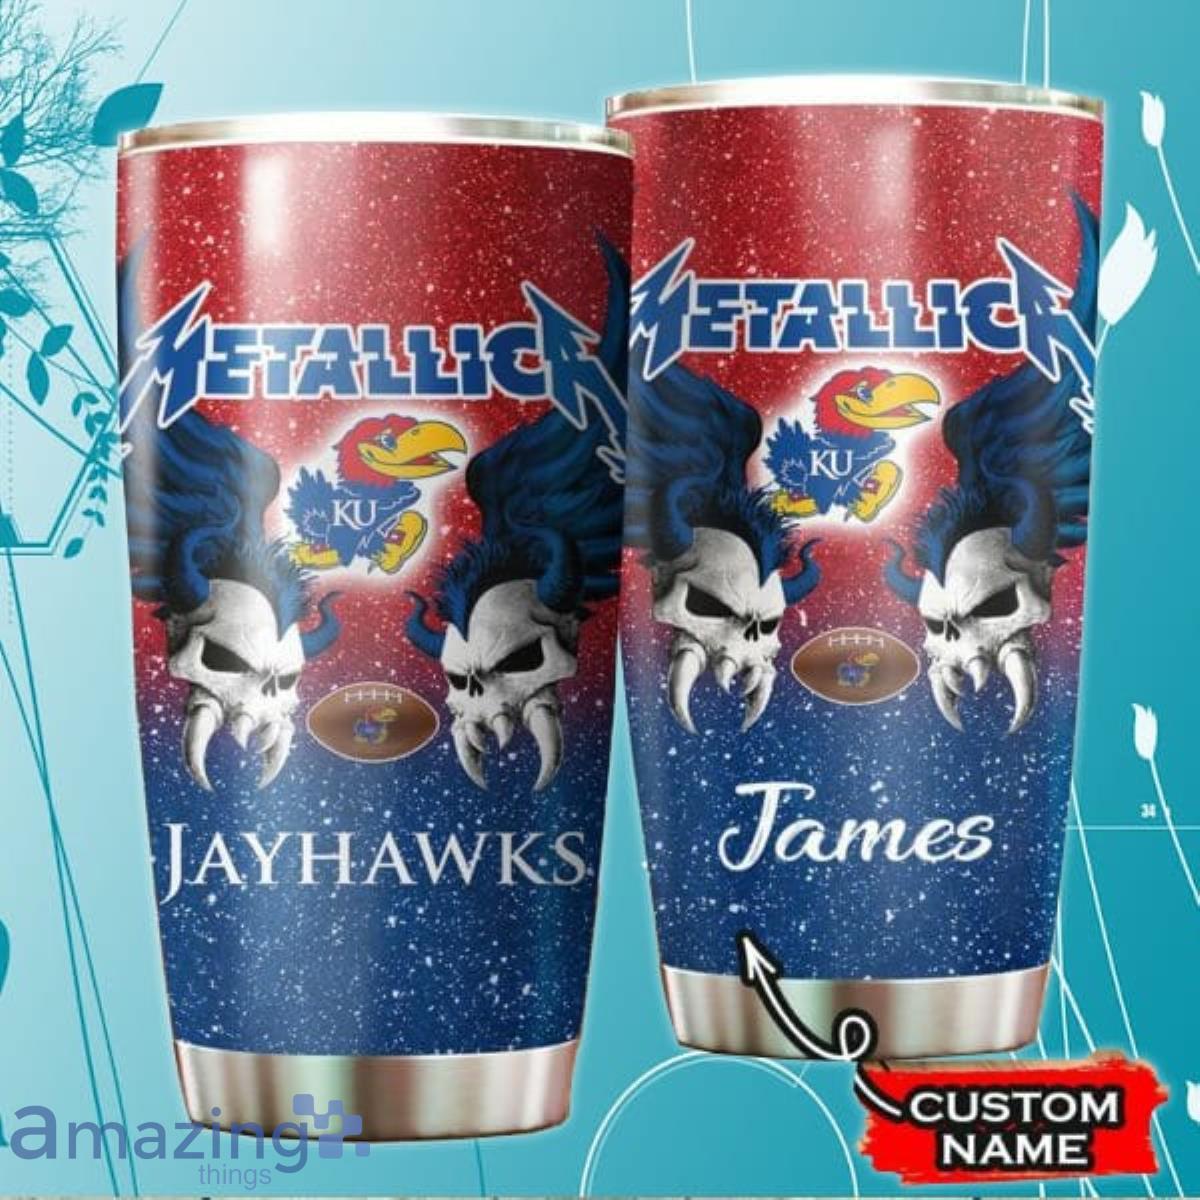 https://image.whatamazingthings.com/2023/09/kansas-jayhawks-ncaa-custom-name-tumbler-style-gift-for-fans.jpg